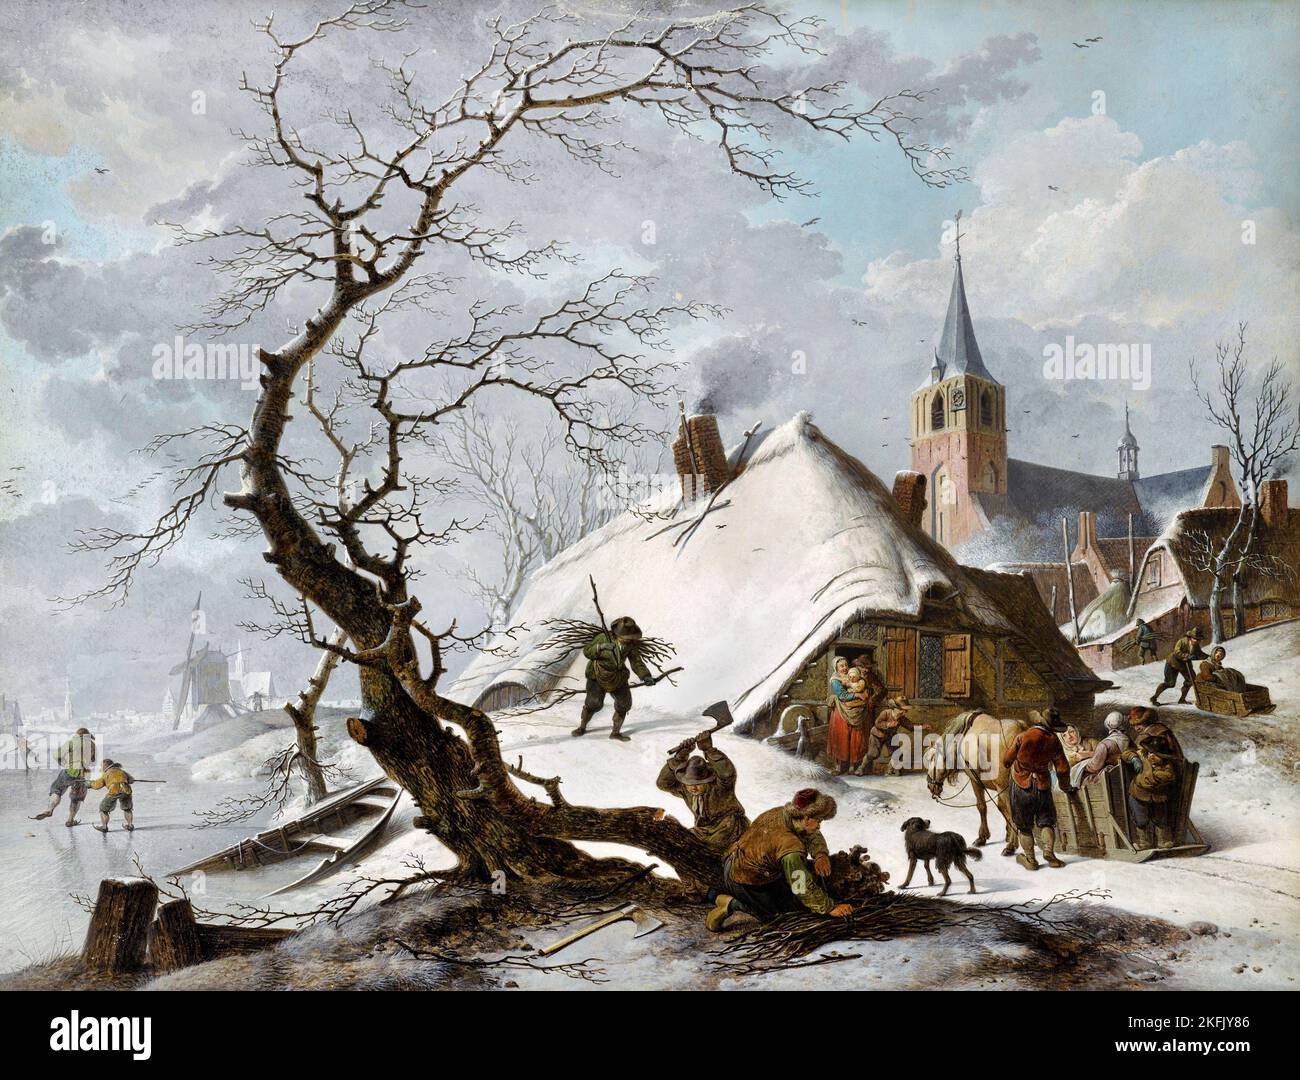 Hendrik Meyer ; Une scène d'hiver ; 1787 ; craie ; stylo ; Marron ; encre ; gouache ; Getty Center, Los Angeles, ÉTATS-UNIS. Banque D'Images